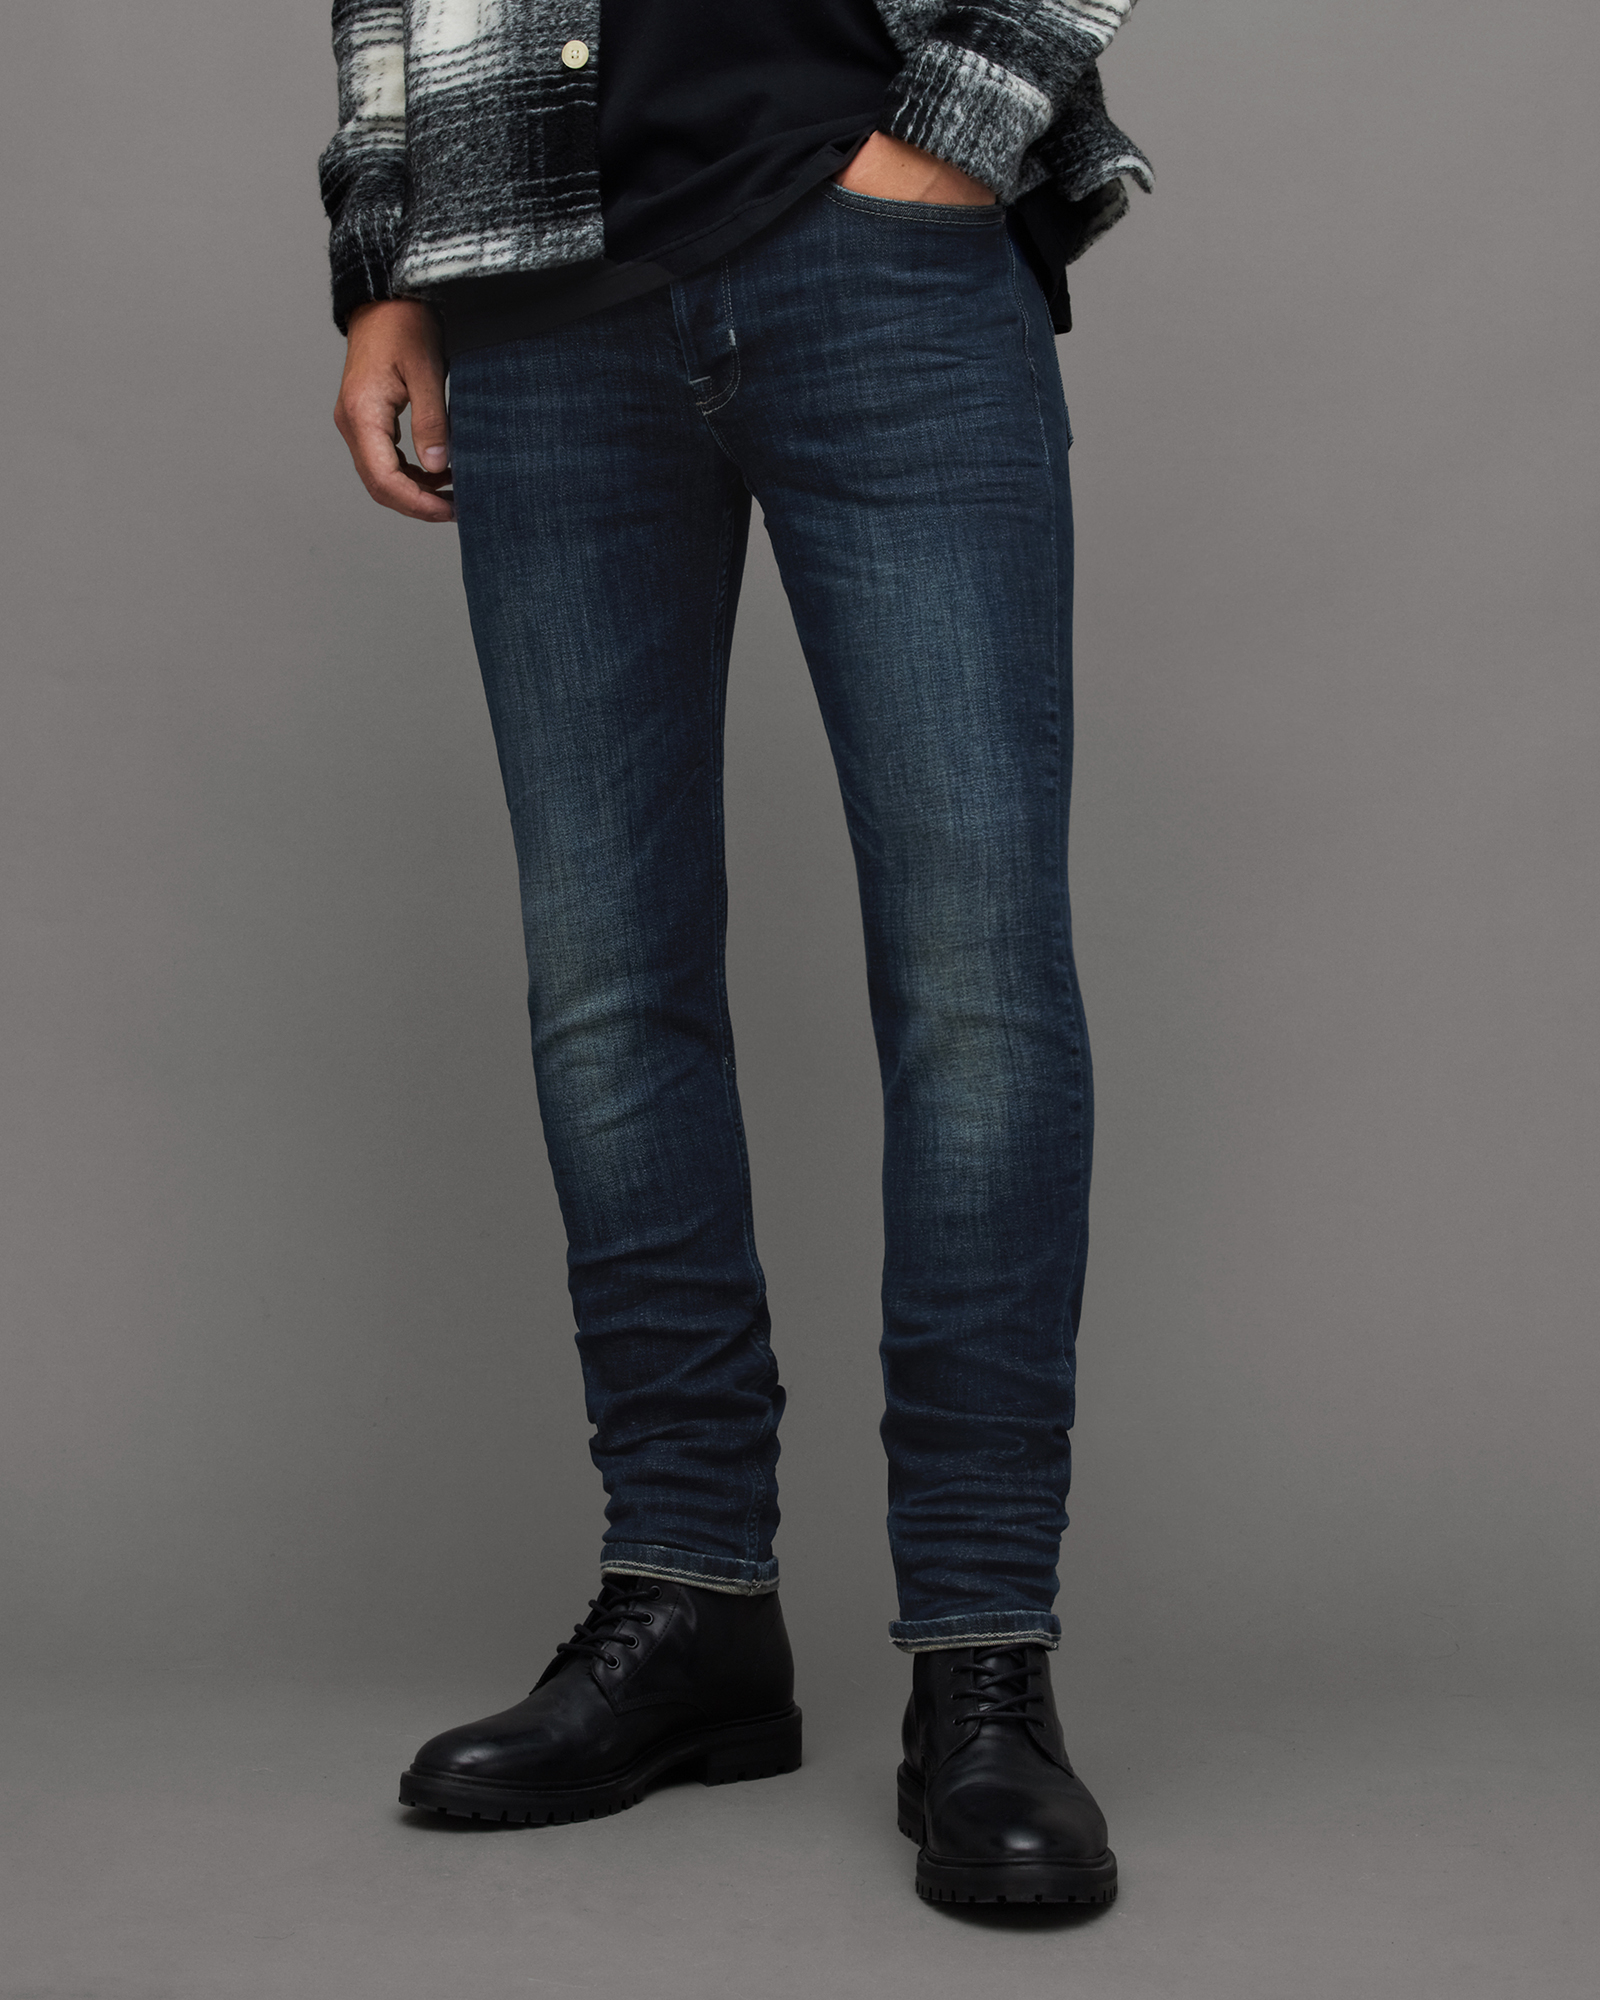 AllSaints Men's Cotton Traditional Rex Slim Jeans, Blue, Size: 38/L30